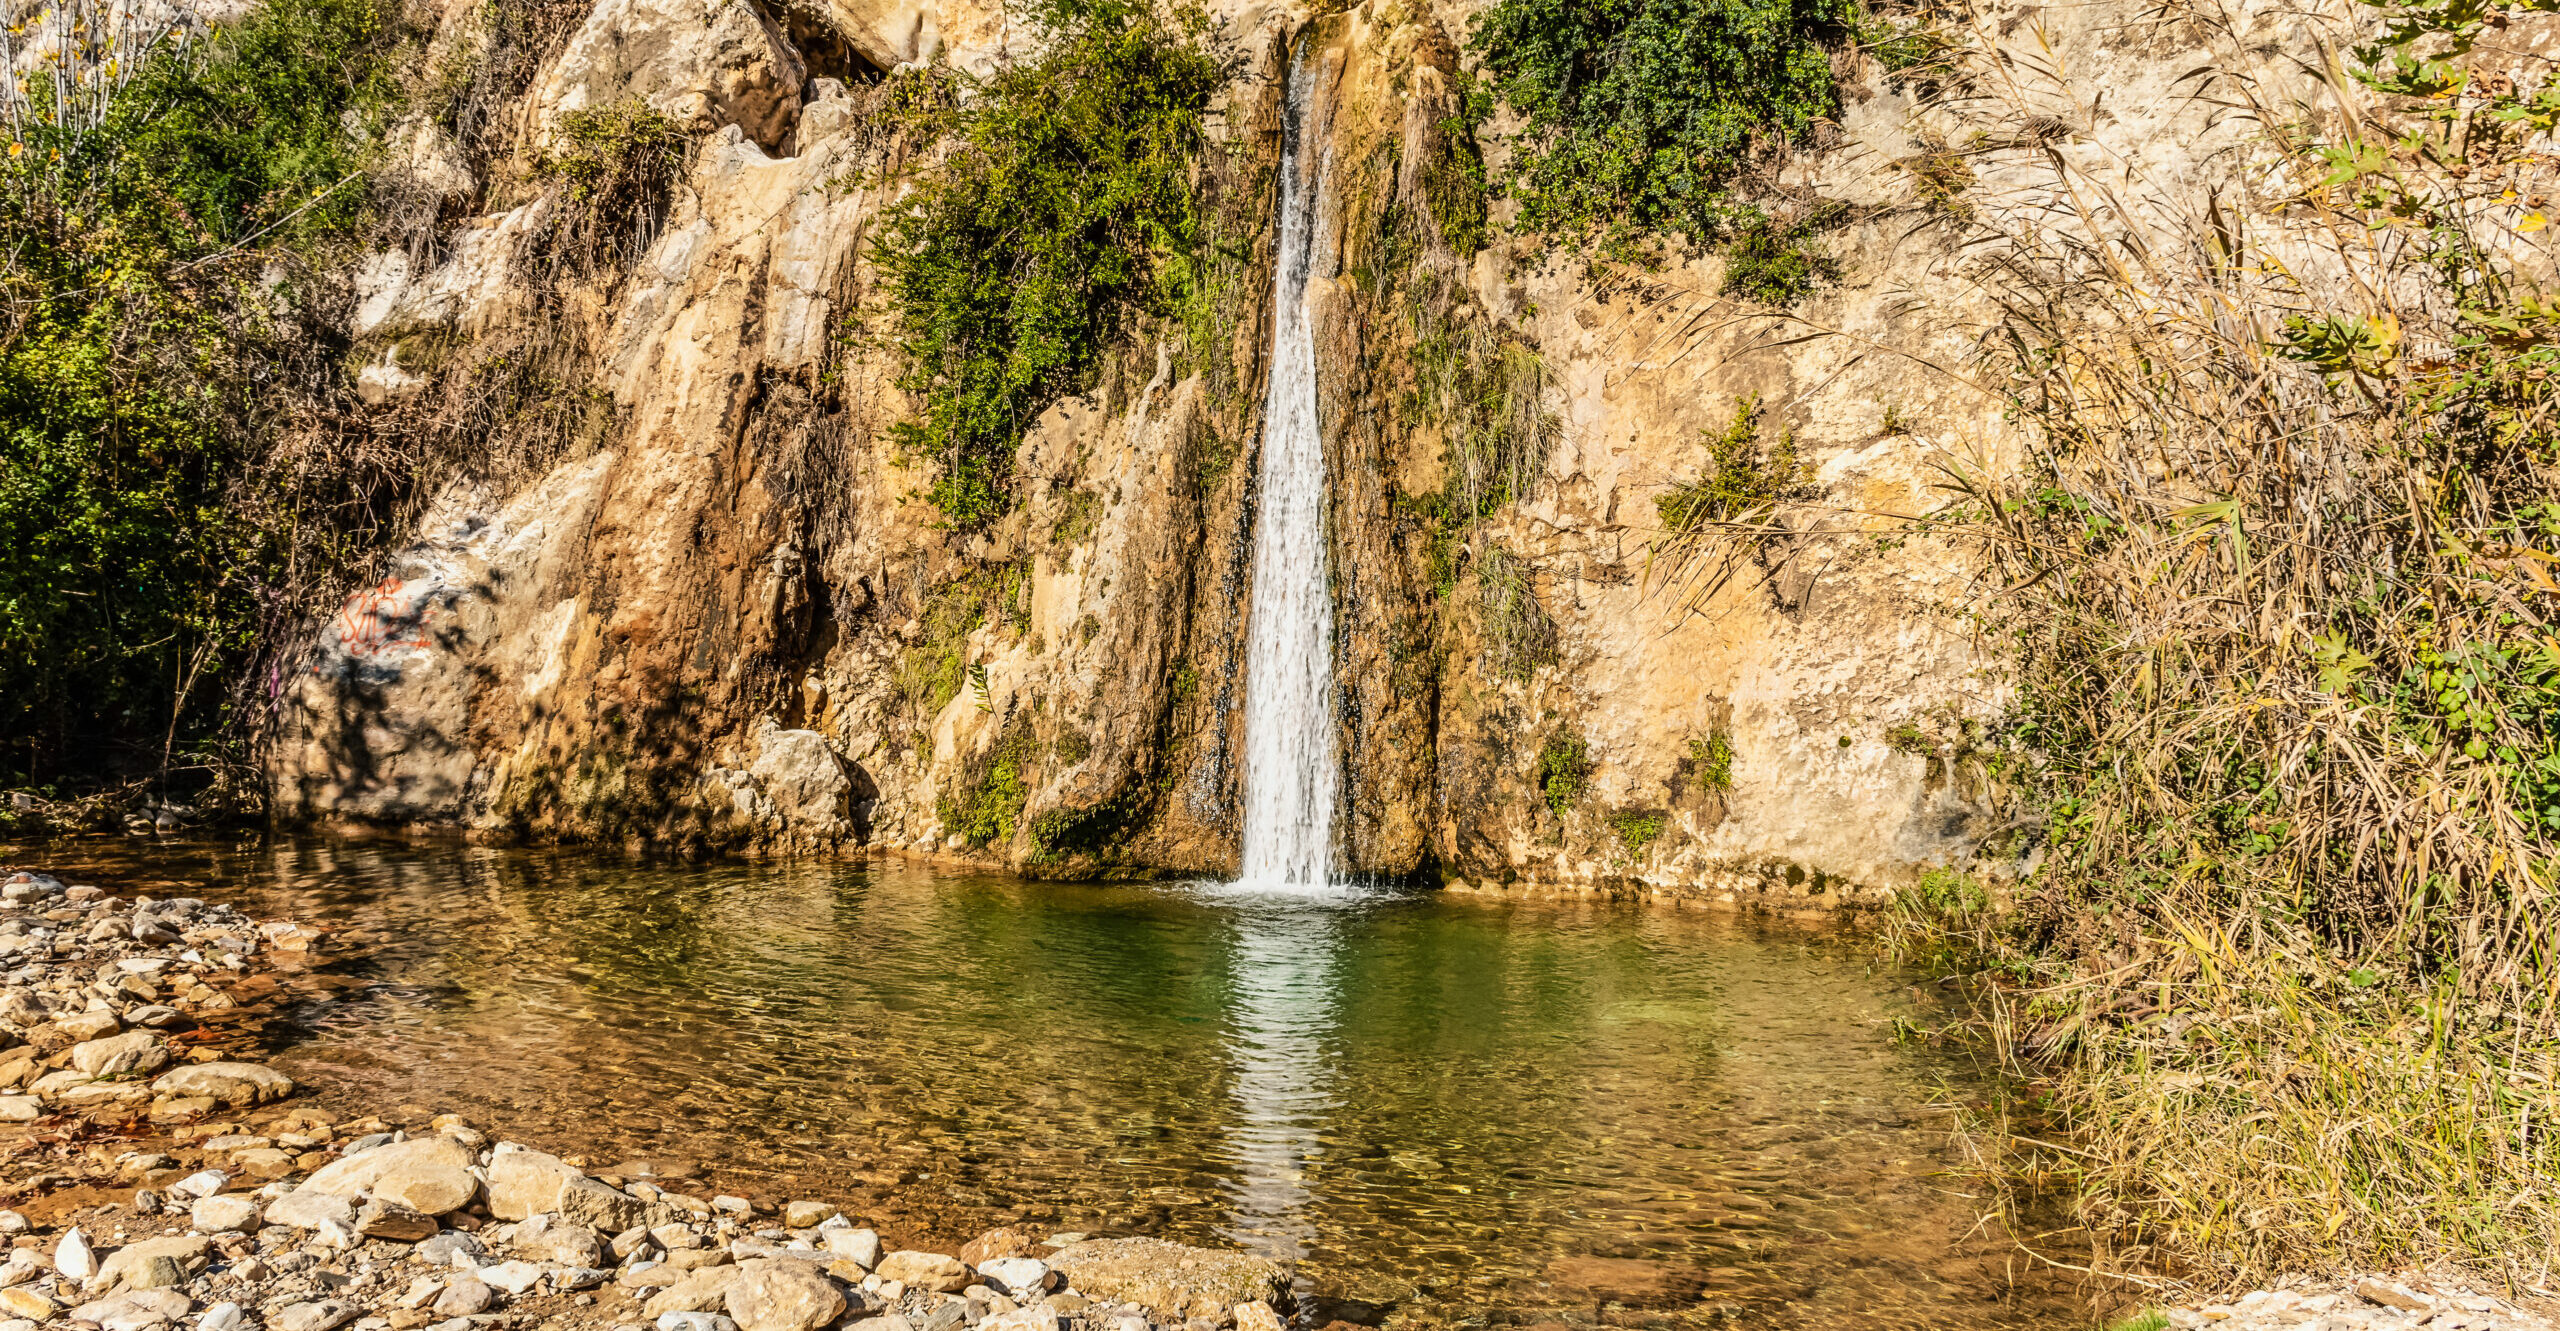 Attica: The Drafi waterfall